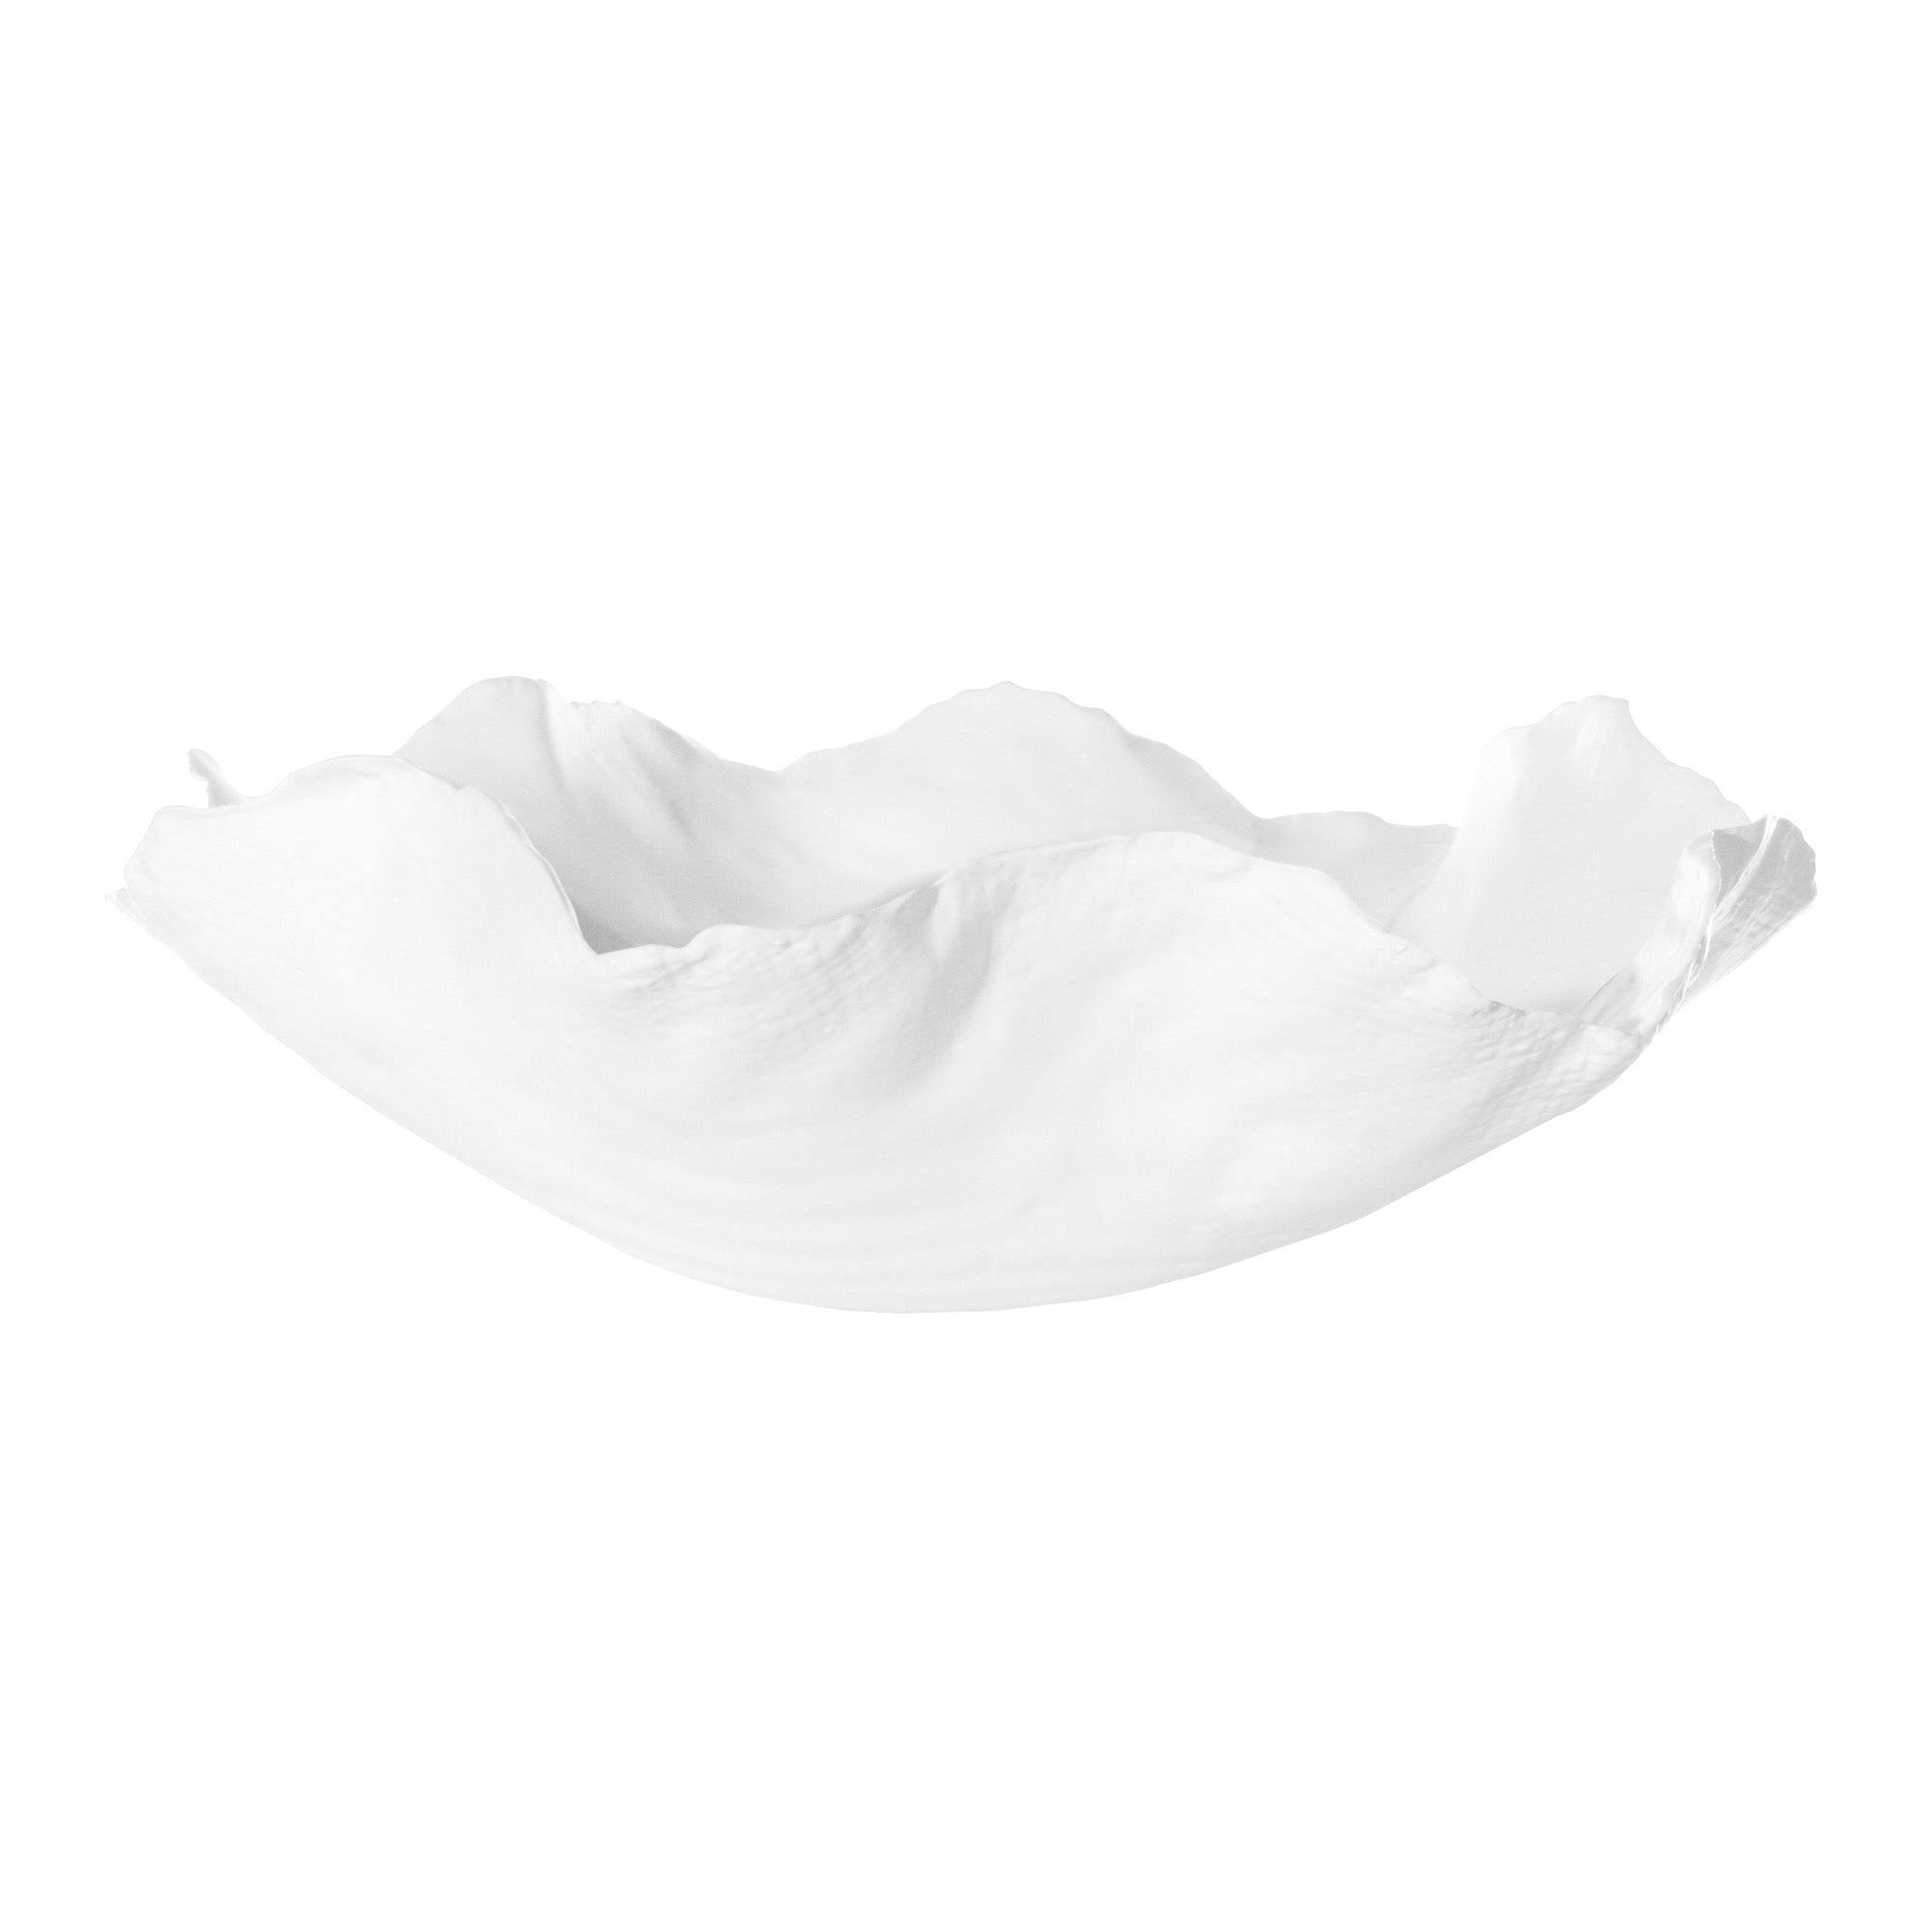 Blossom Handmade Ceramic Bowl in White by CuratedKravet